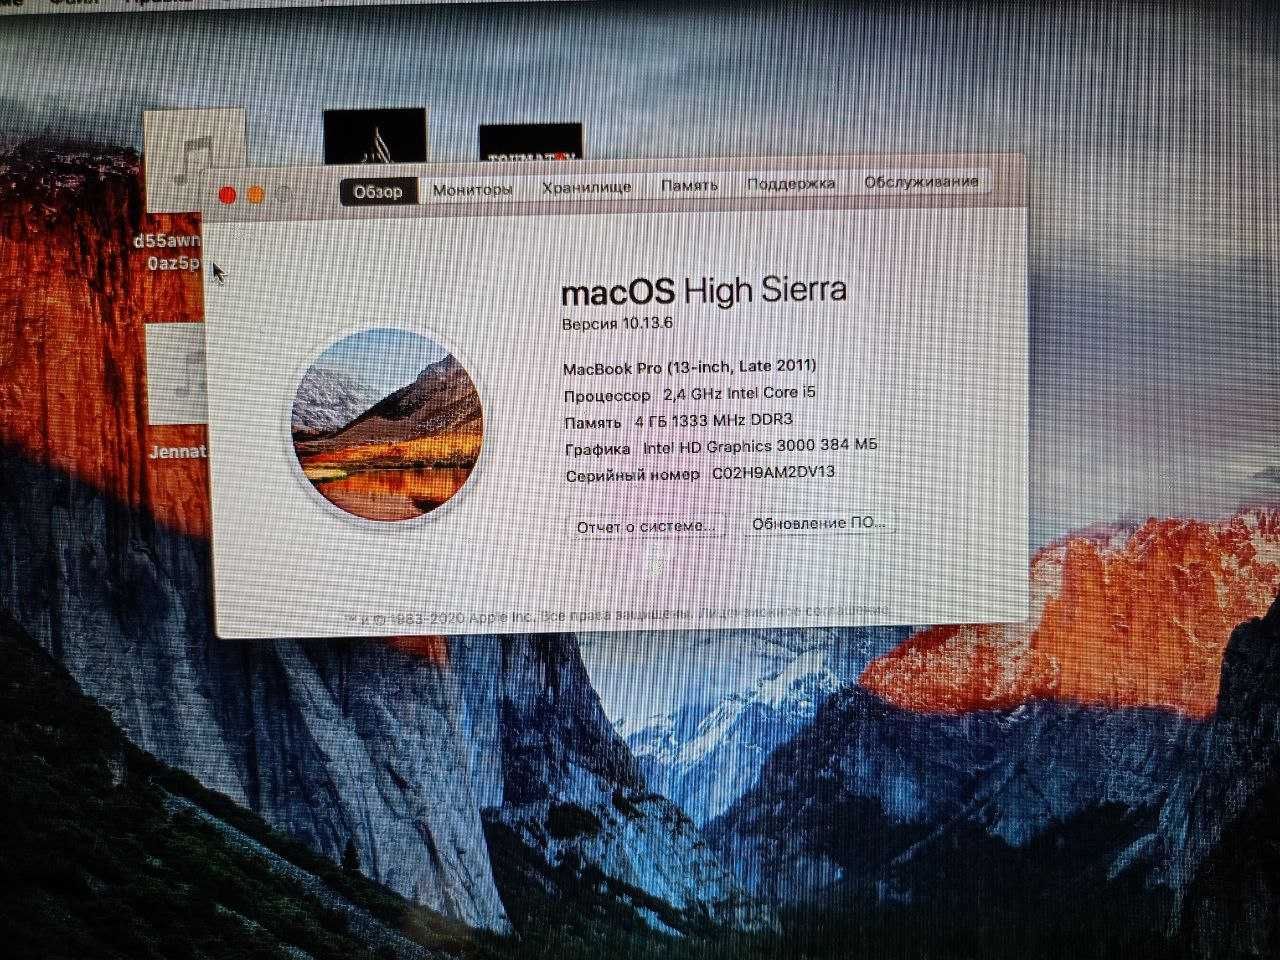 MacBook Pro (13-inch) sotiladi